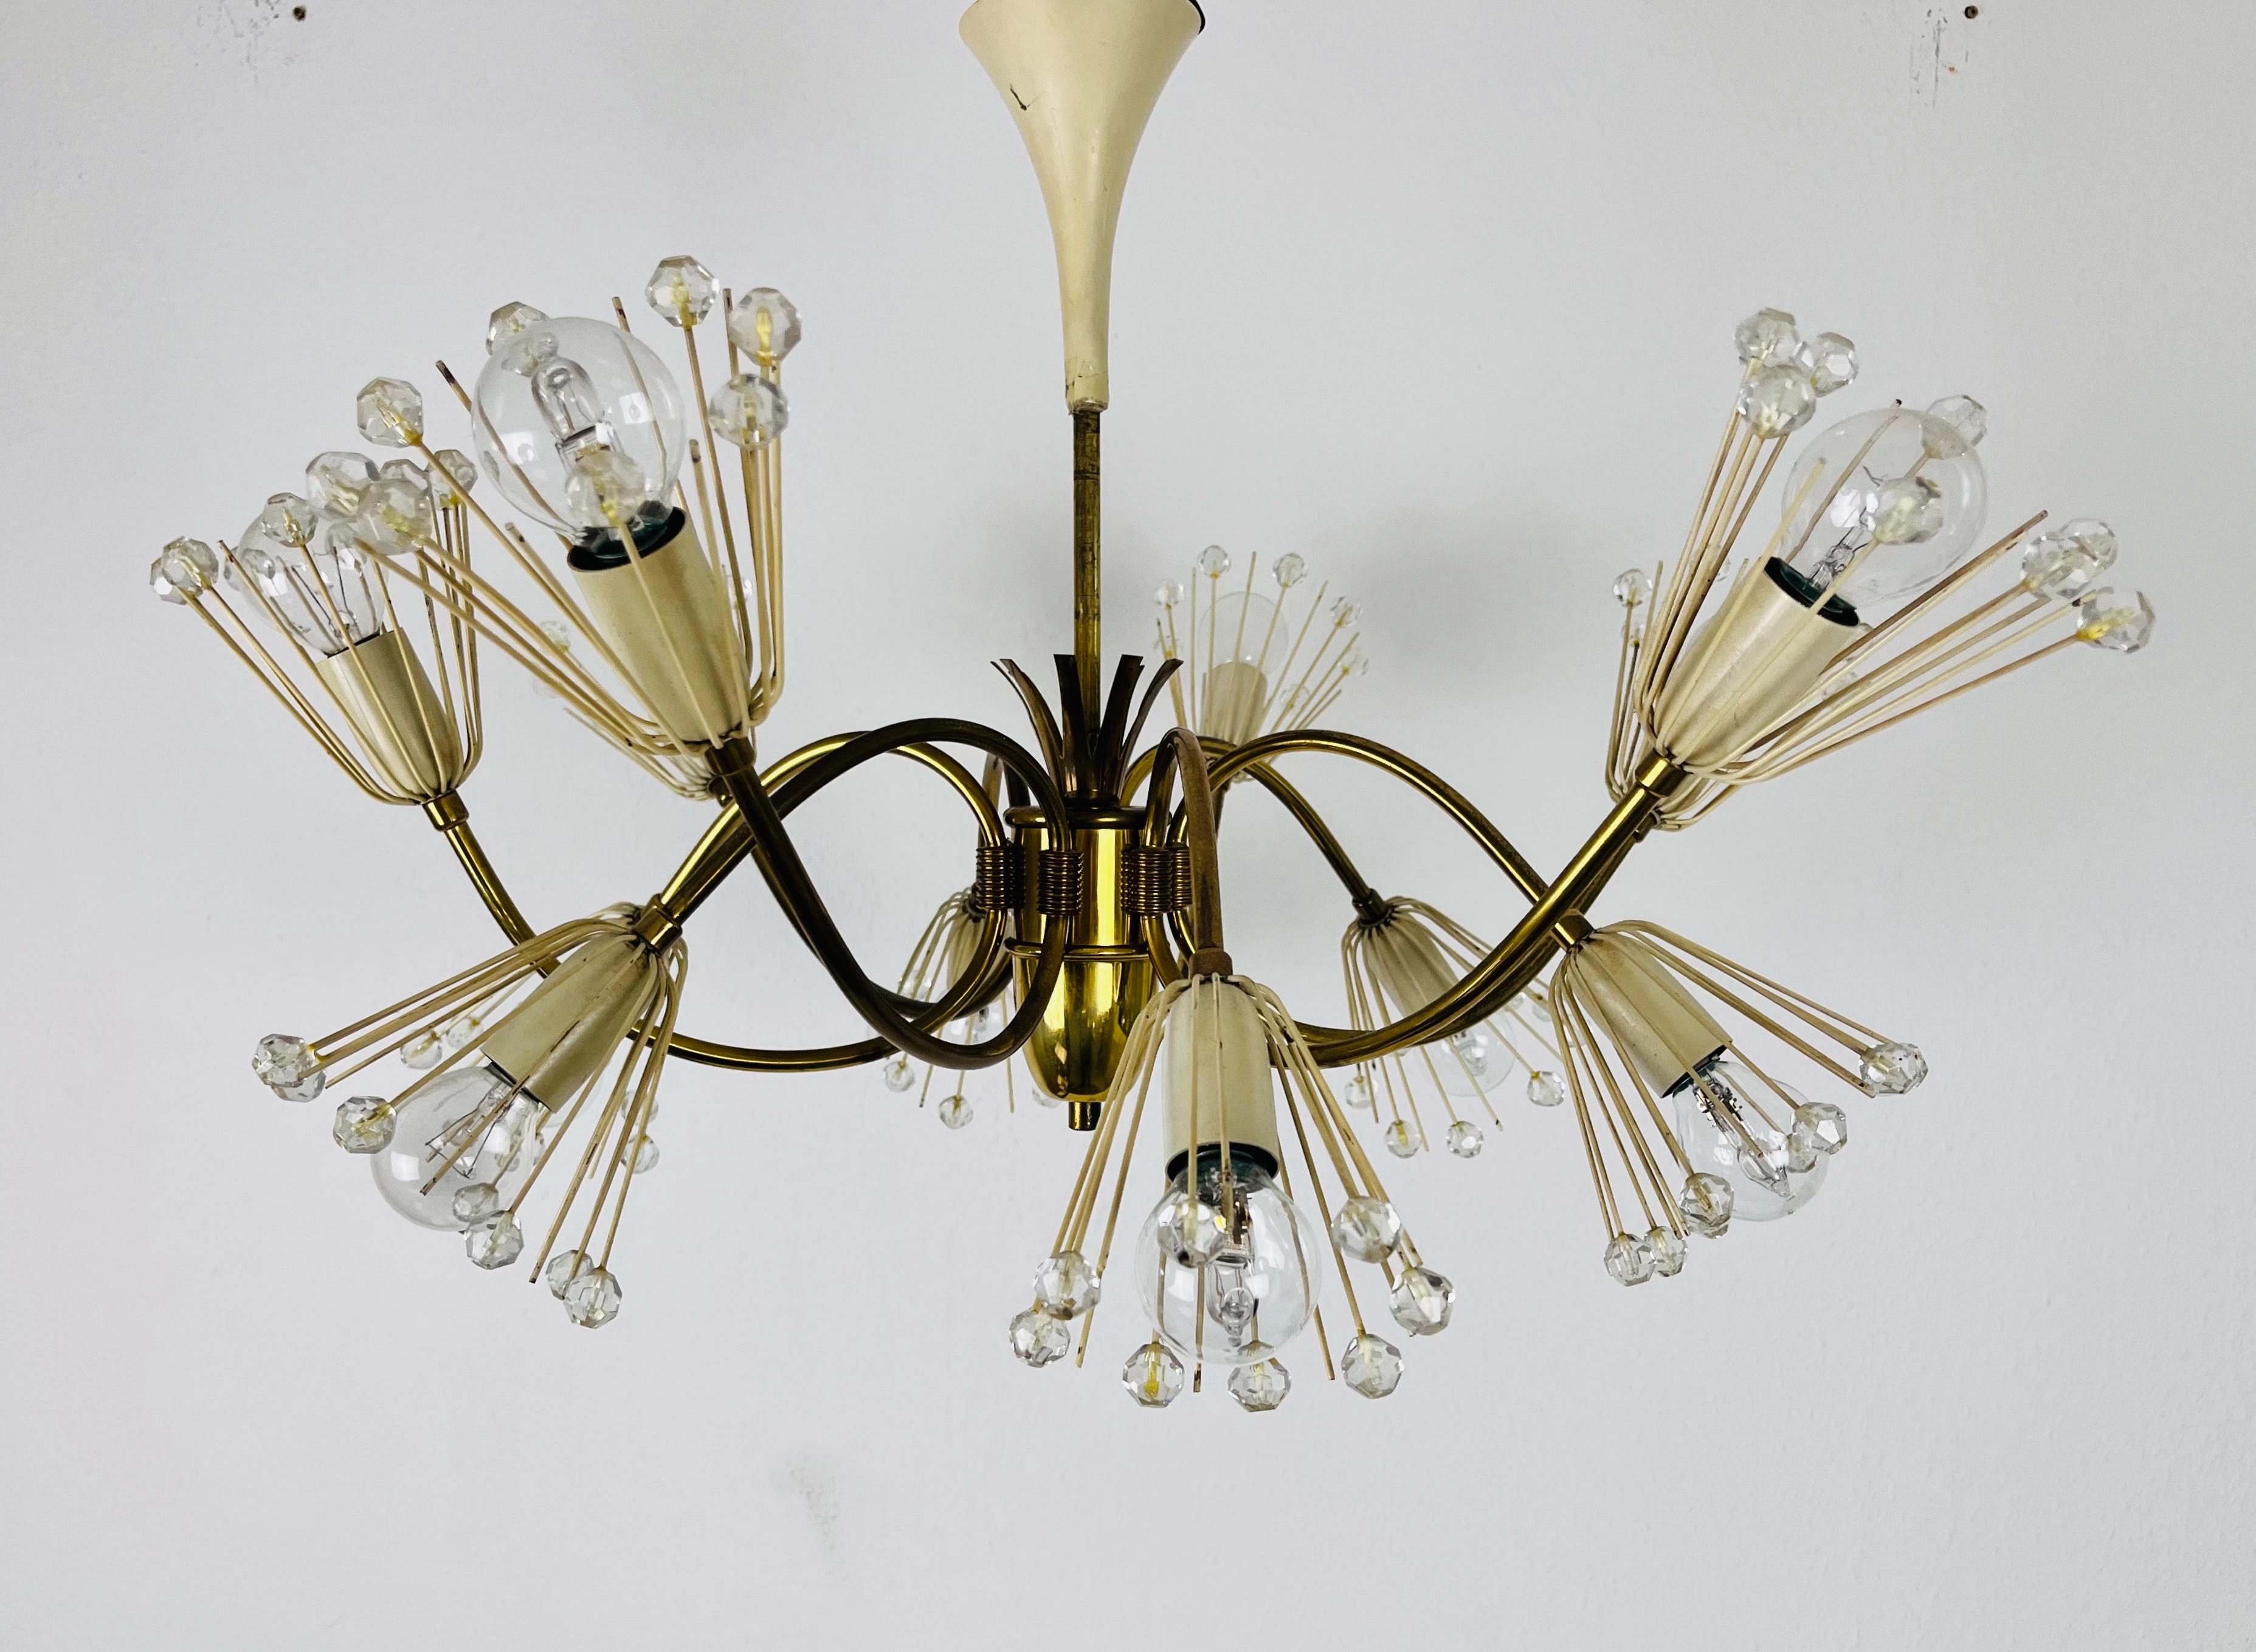 Ein schöner Kronleuchter von Emil Stejnar für Rupert Nikoll, Österreich, aus den 1960er Jahren. Die Beleuchtung hat ein erstaunliches Midcentury-Design. Er ist aus Messing und kleinen Gläsern gefertigt. Die Leuchte hat ein sehr schönes florales